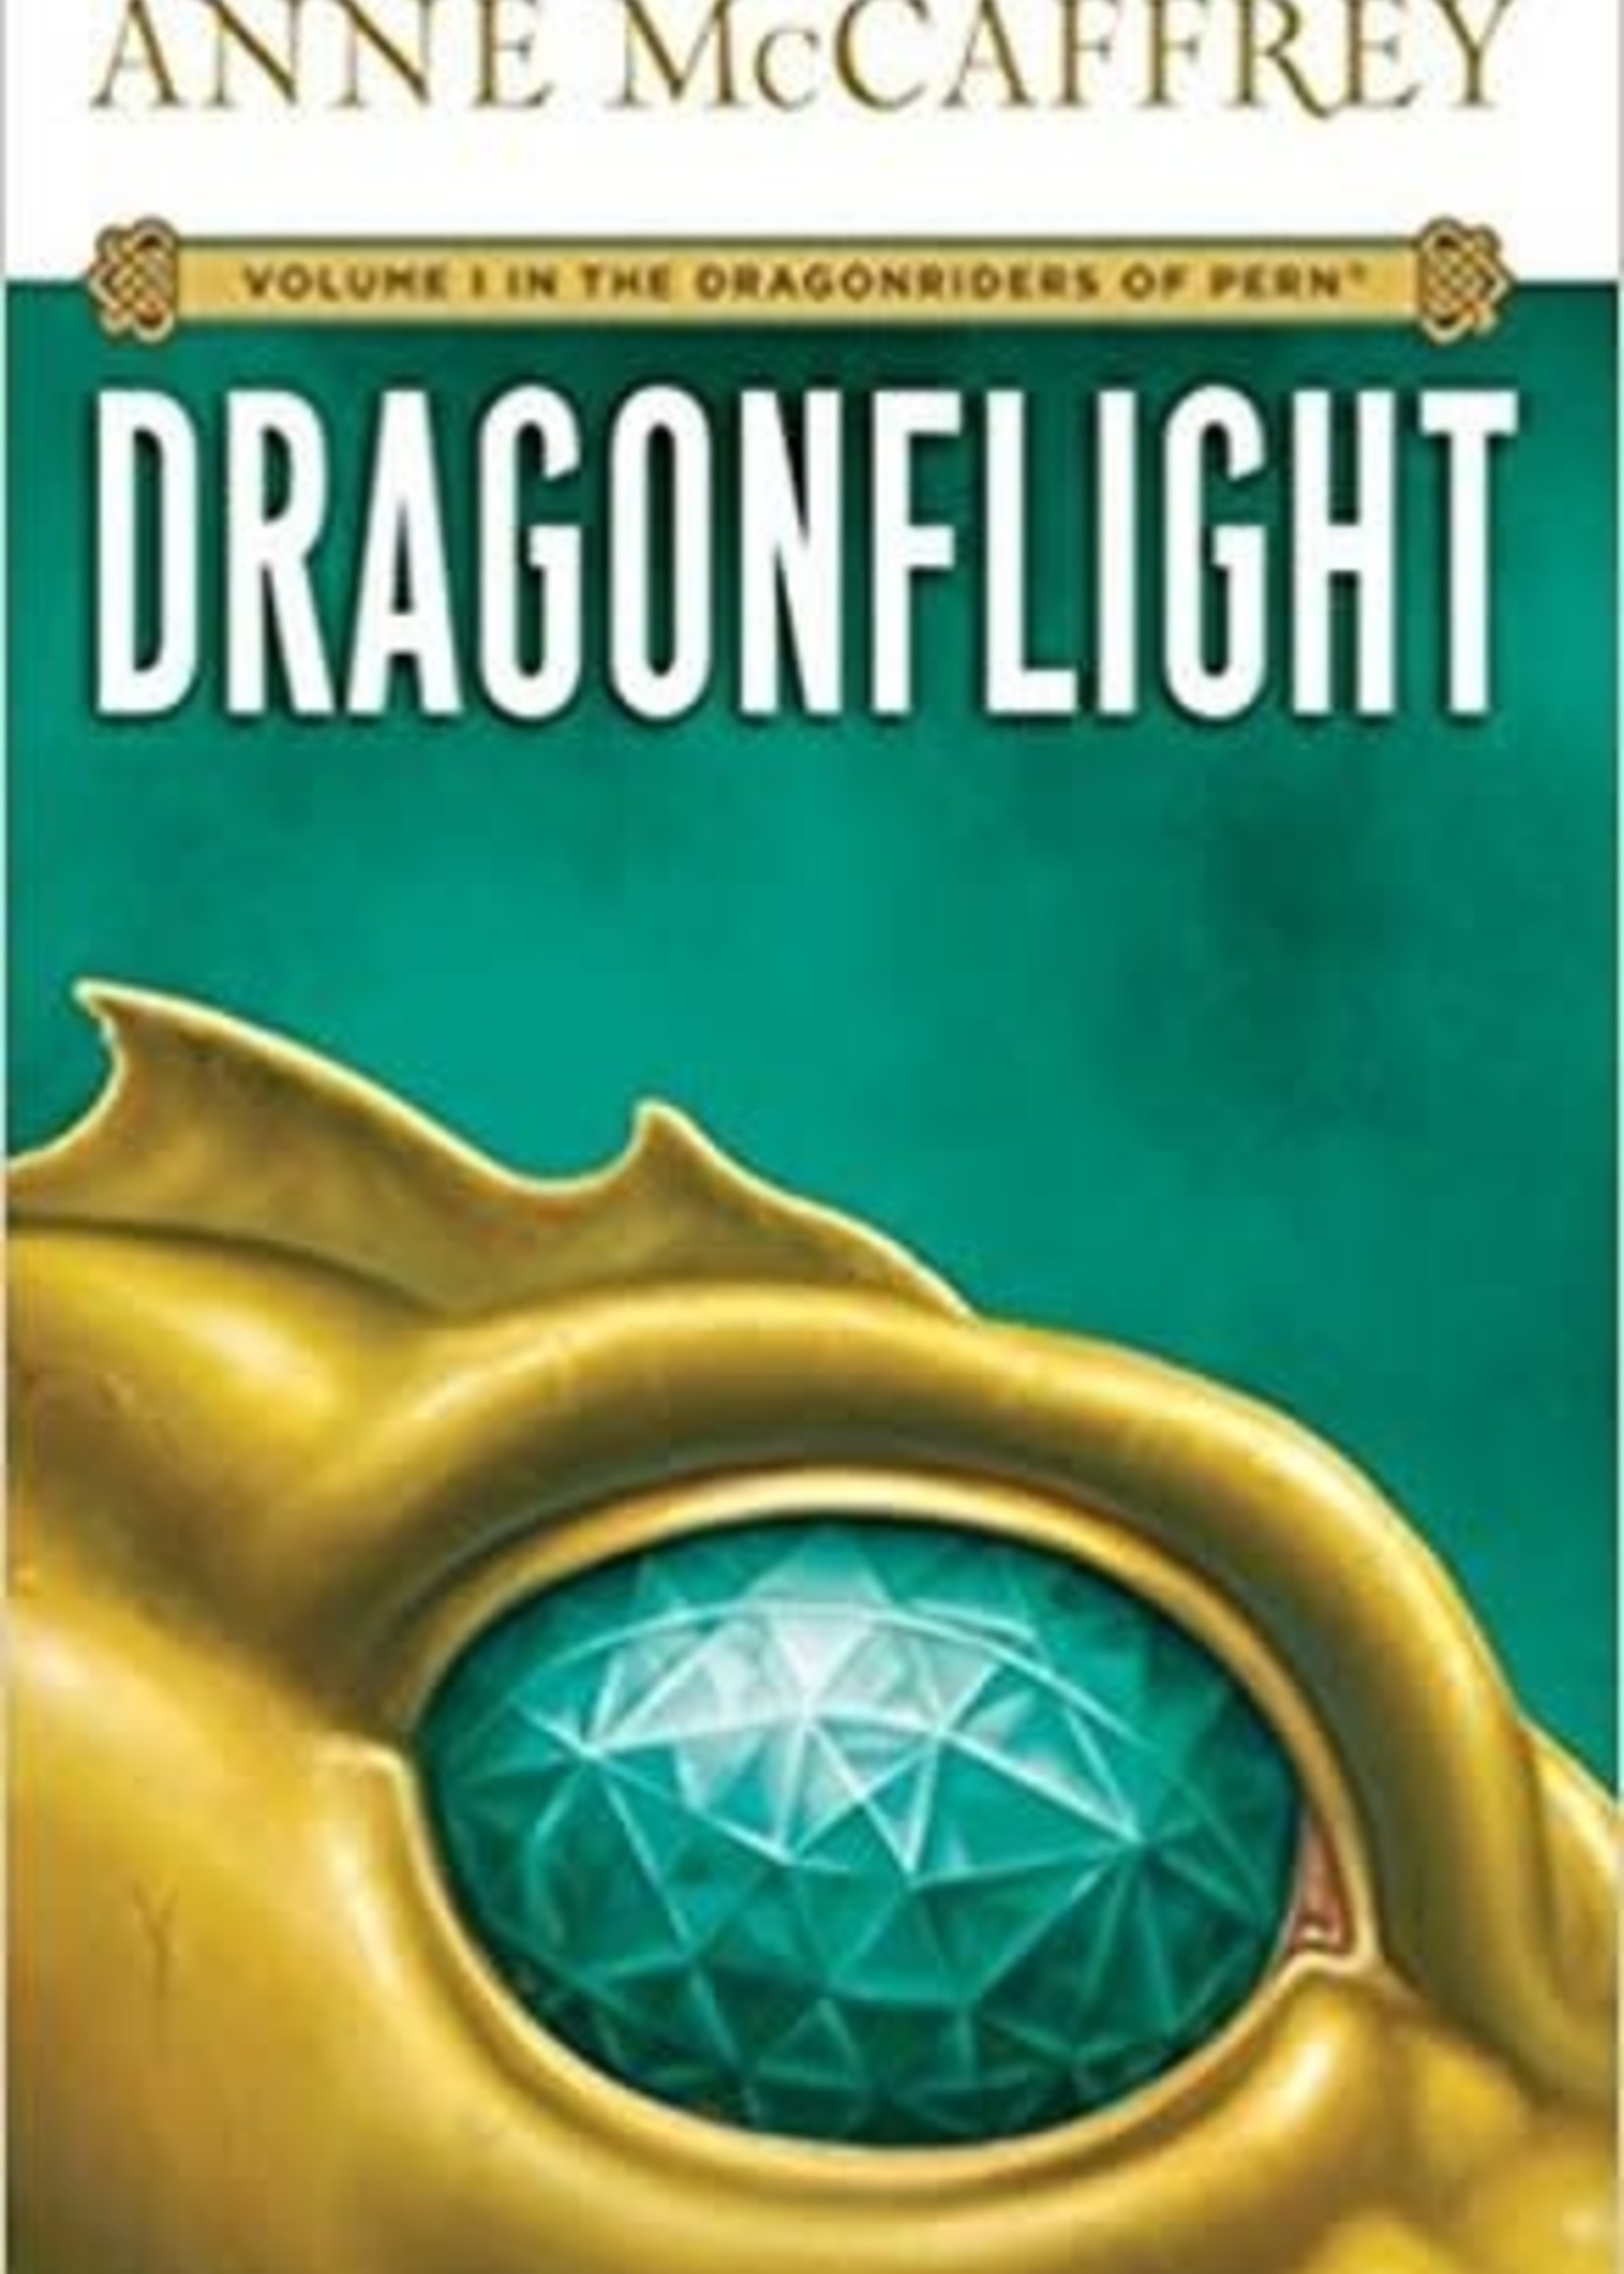 Dragonflight (Dragonriders of Pern #1) by Anne McCaffrey